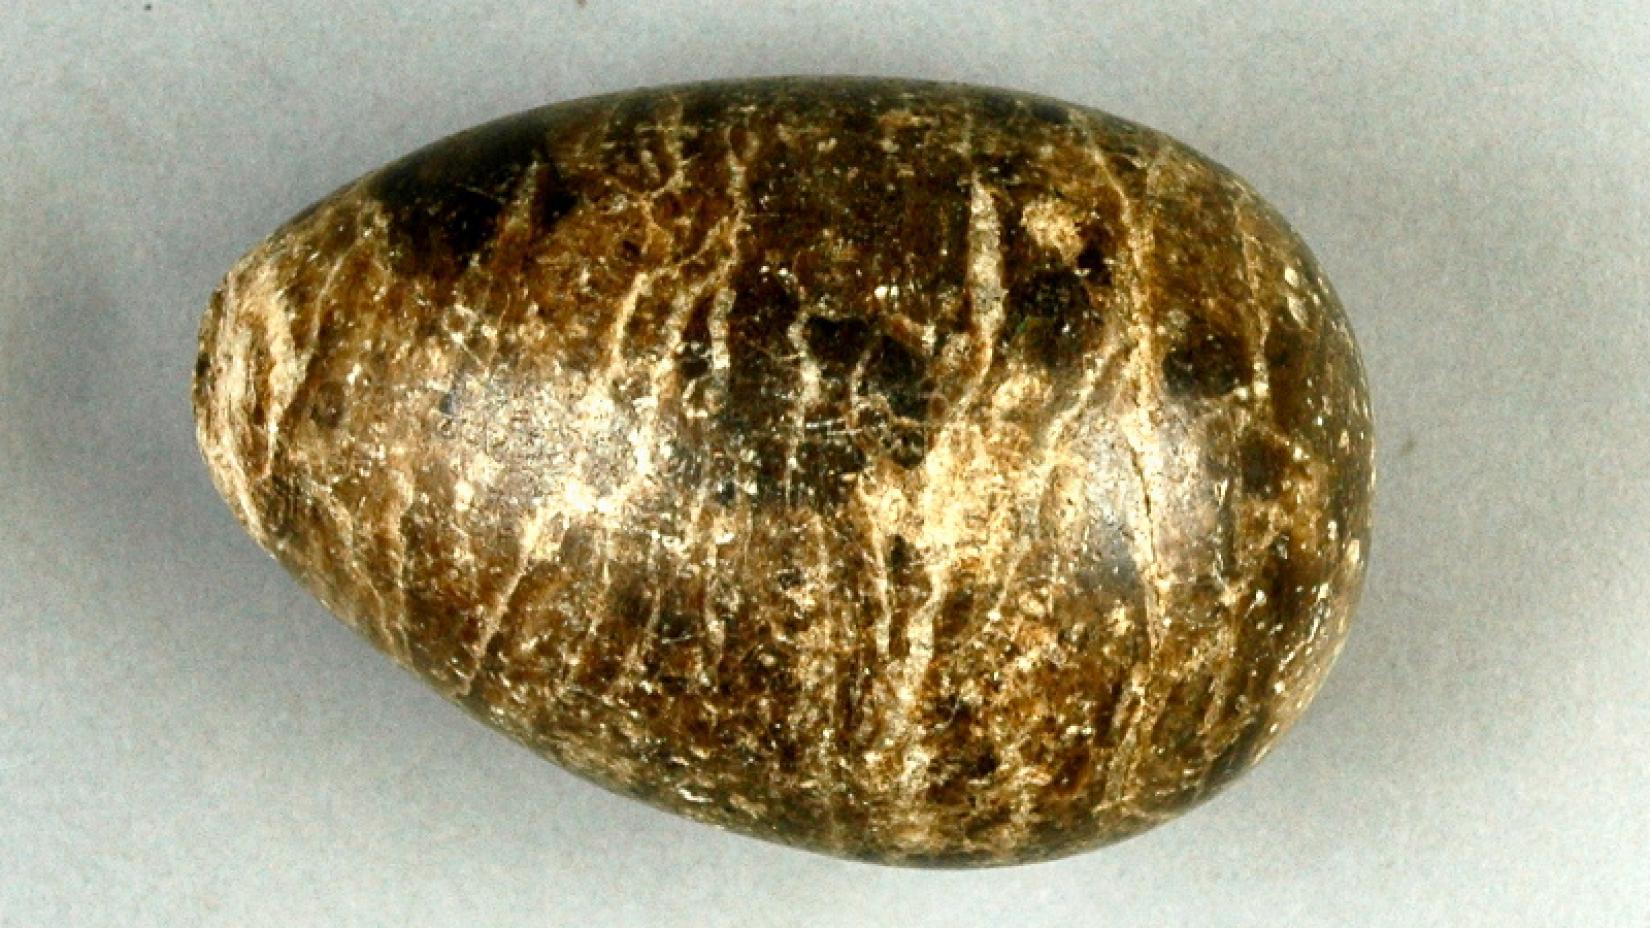 Ģipša ola, ko savās vadītajās ekskursijās bieži izmantoja pedagogs, ģeologs un muzeju darbinieks Jānis Greste